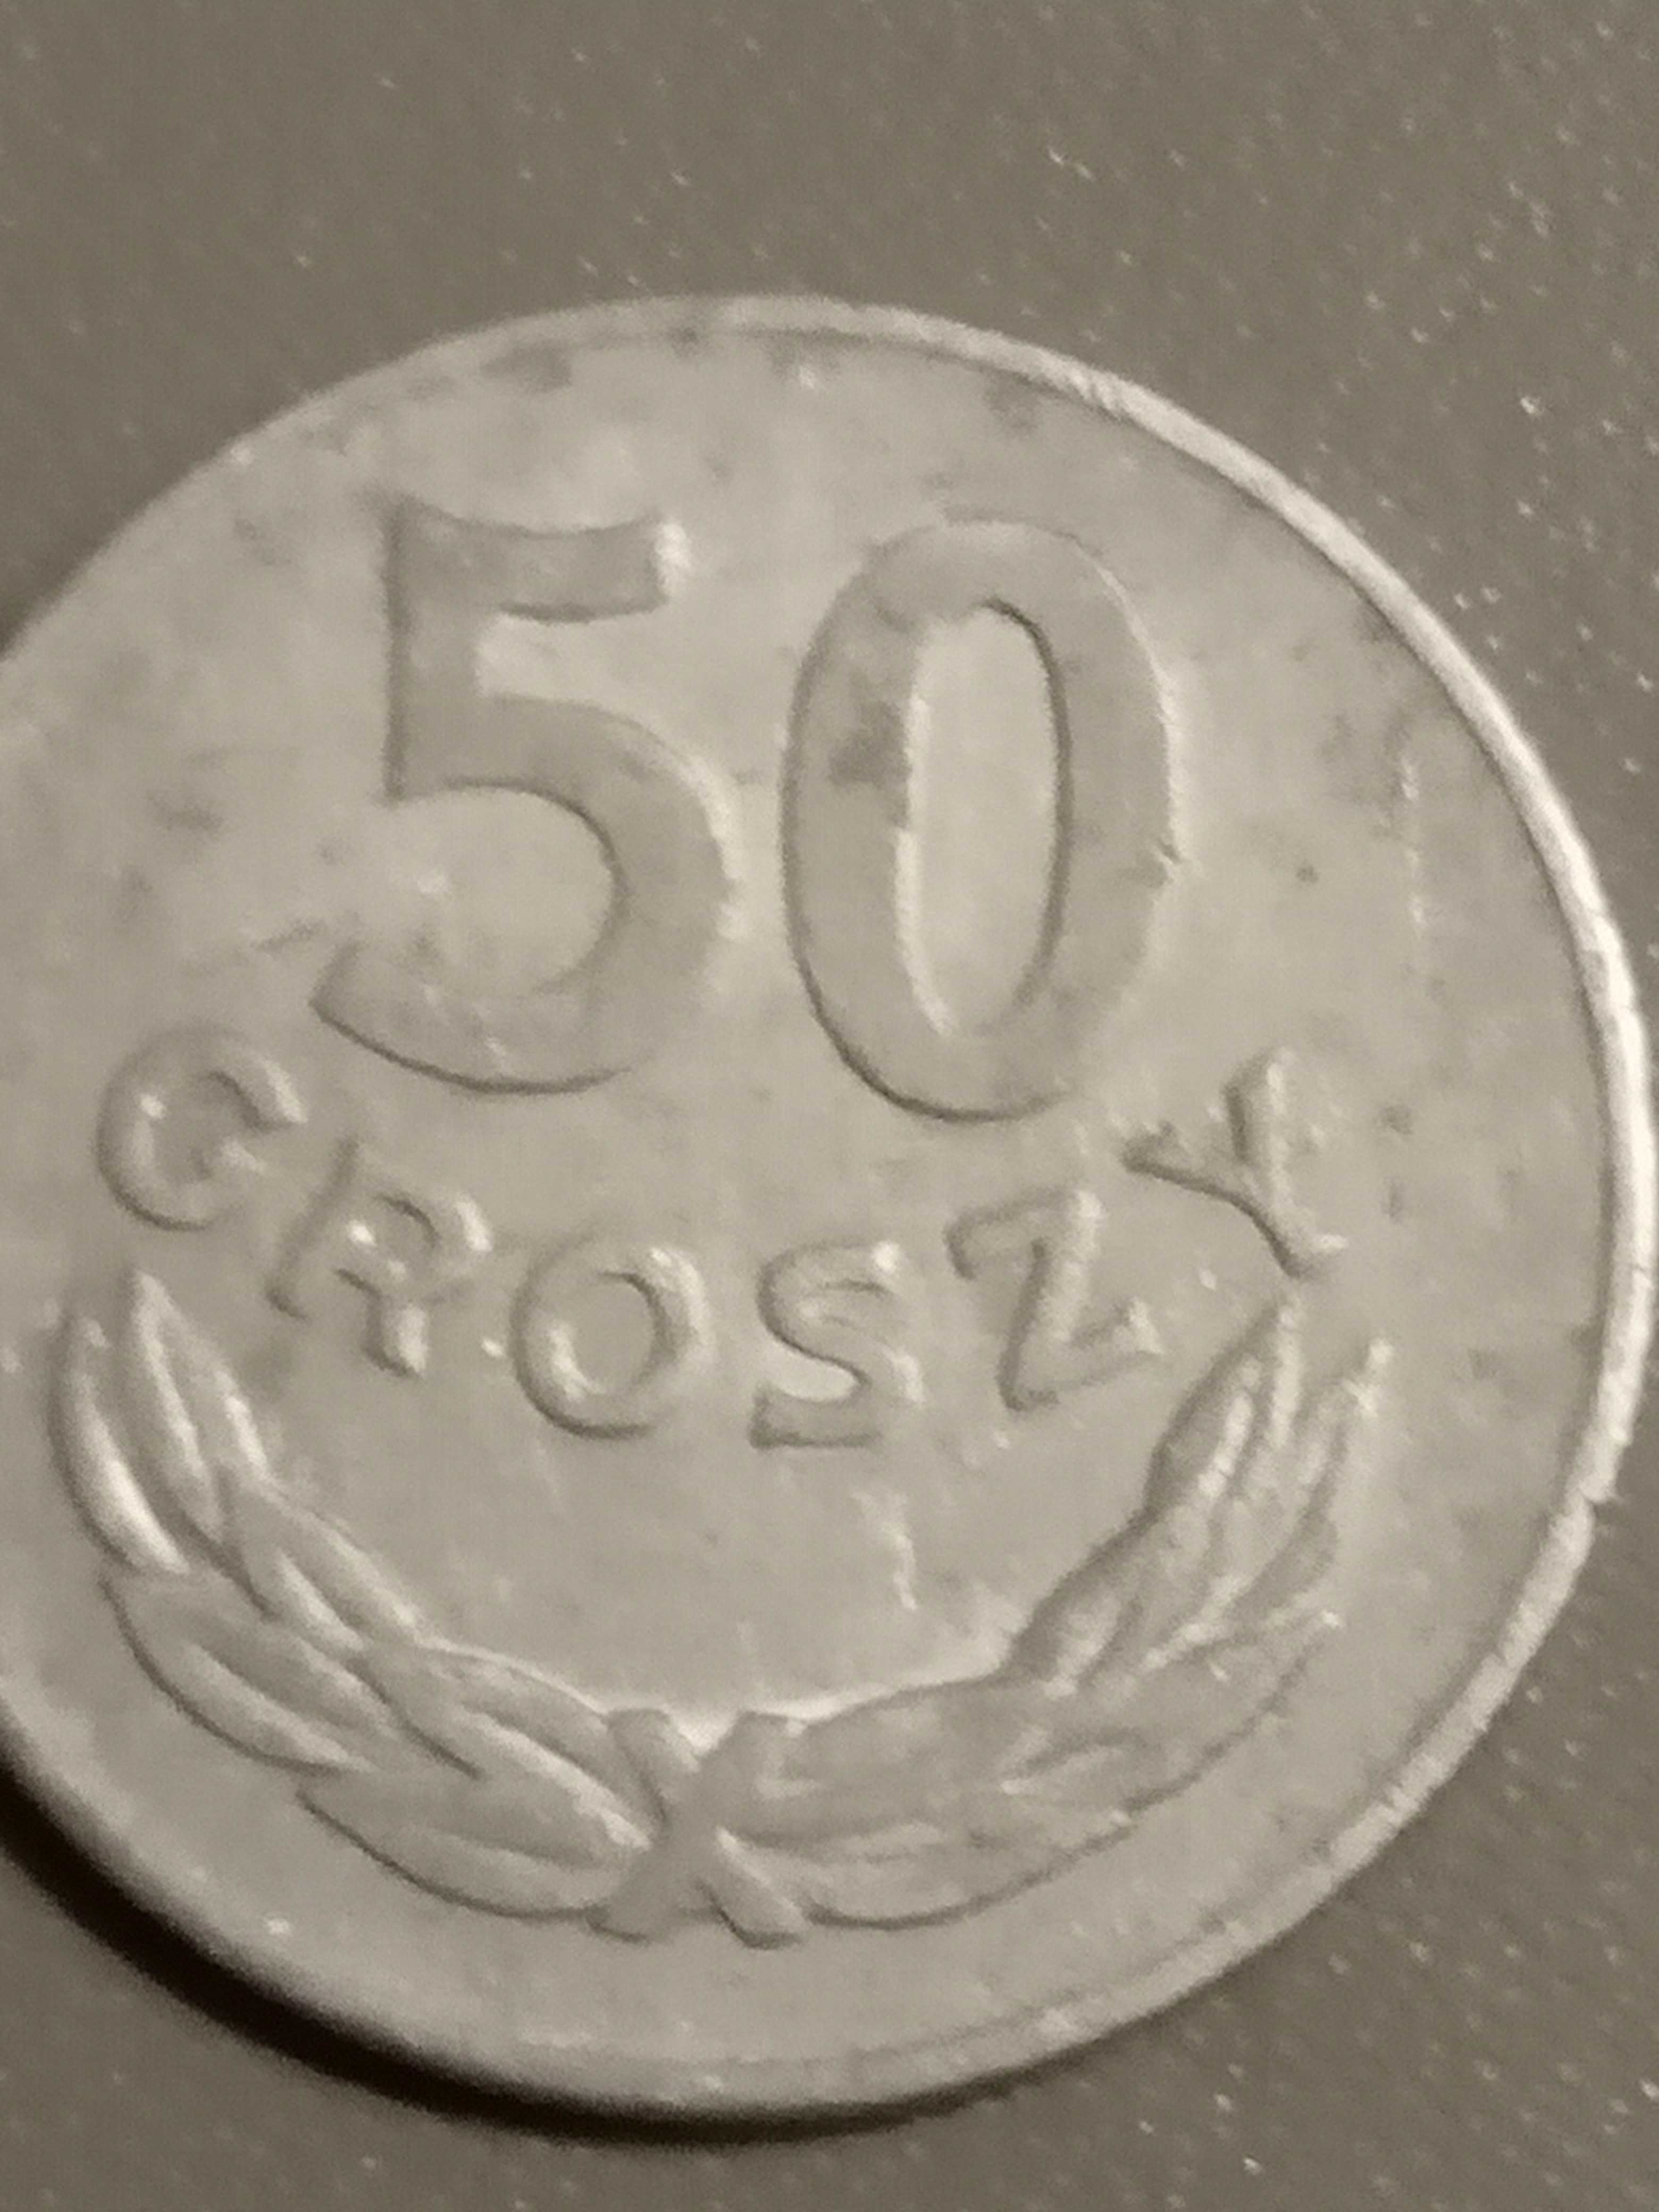 Moneta 50 gr.1976 r